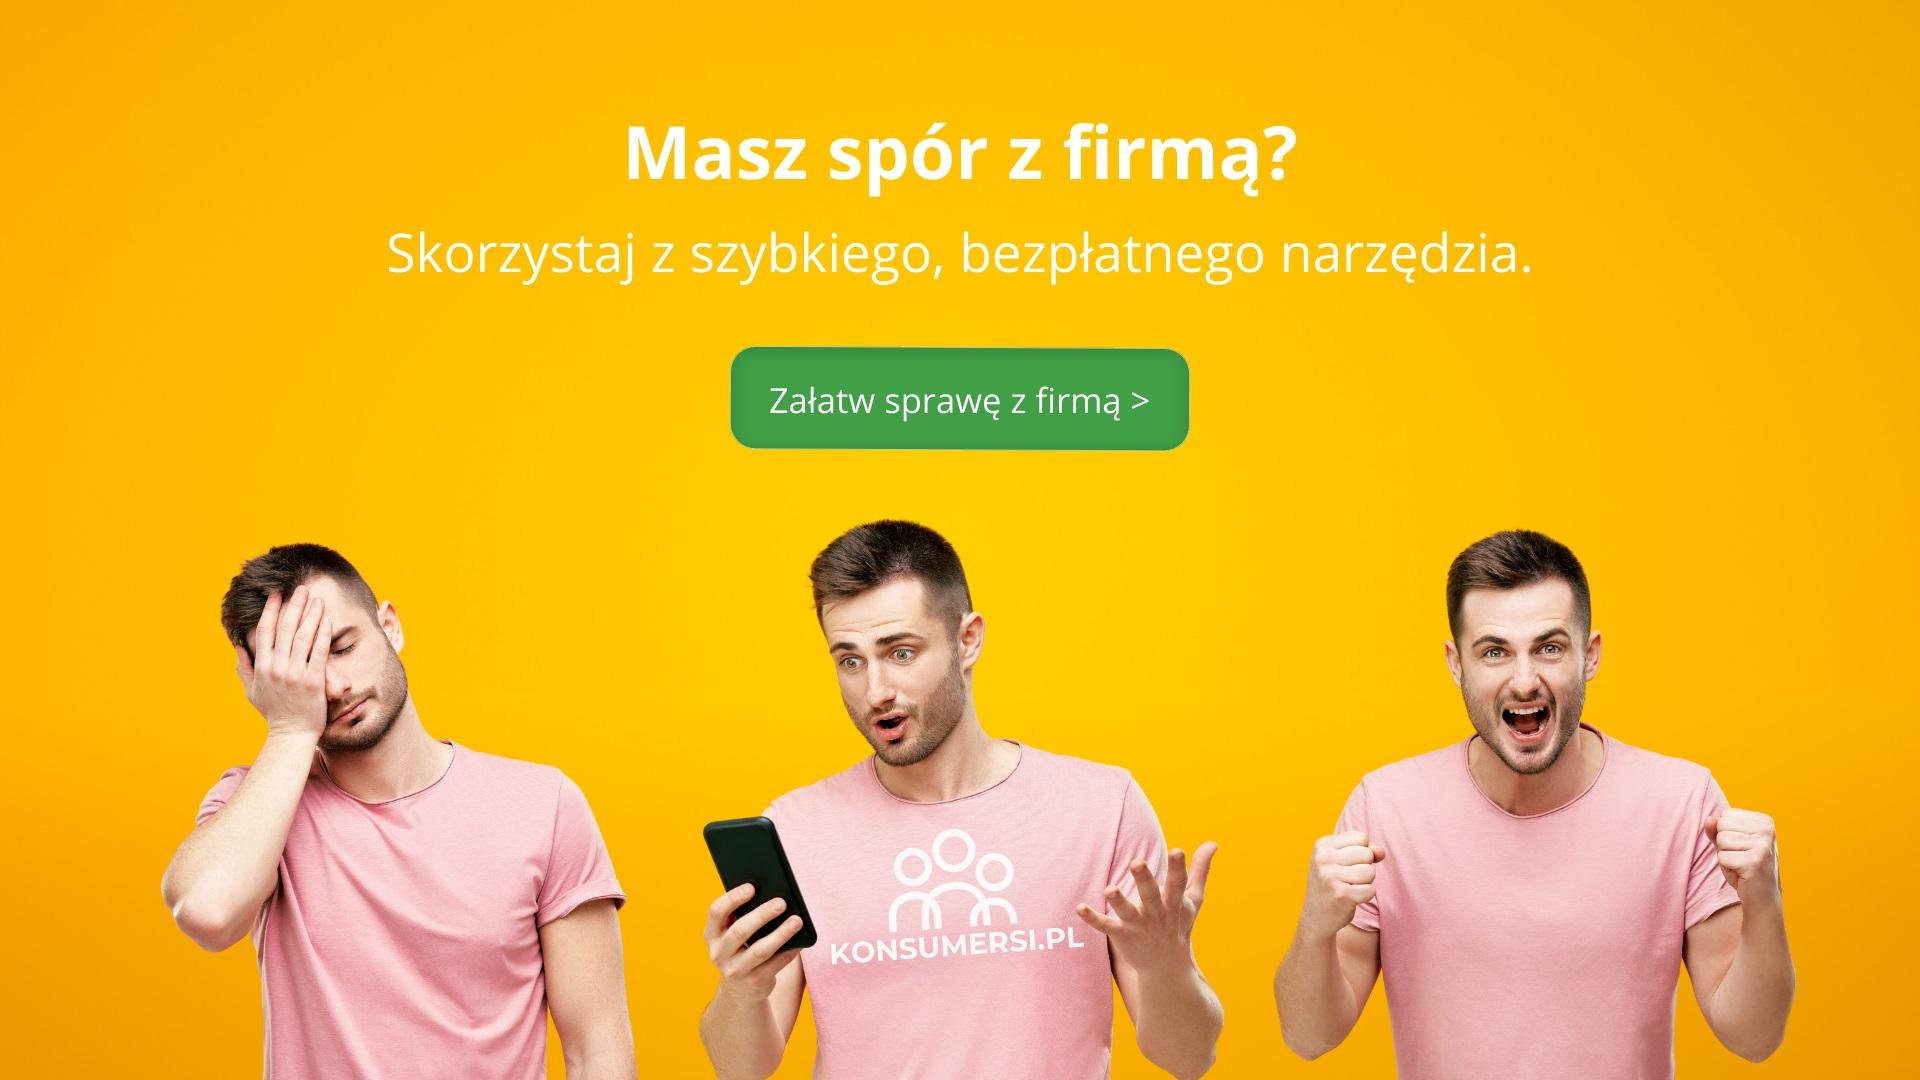 Konsumersi.pl – nowy serwis internetowy, który pomaga zakończyć spór konsumencki